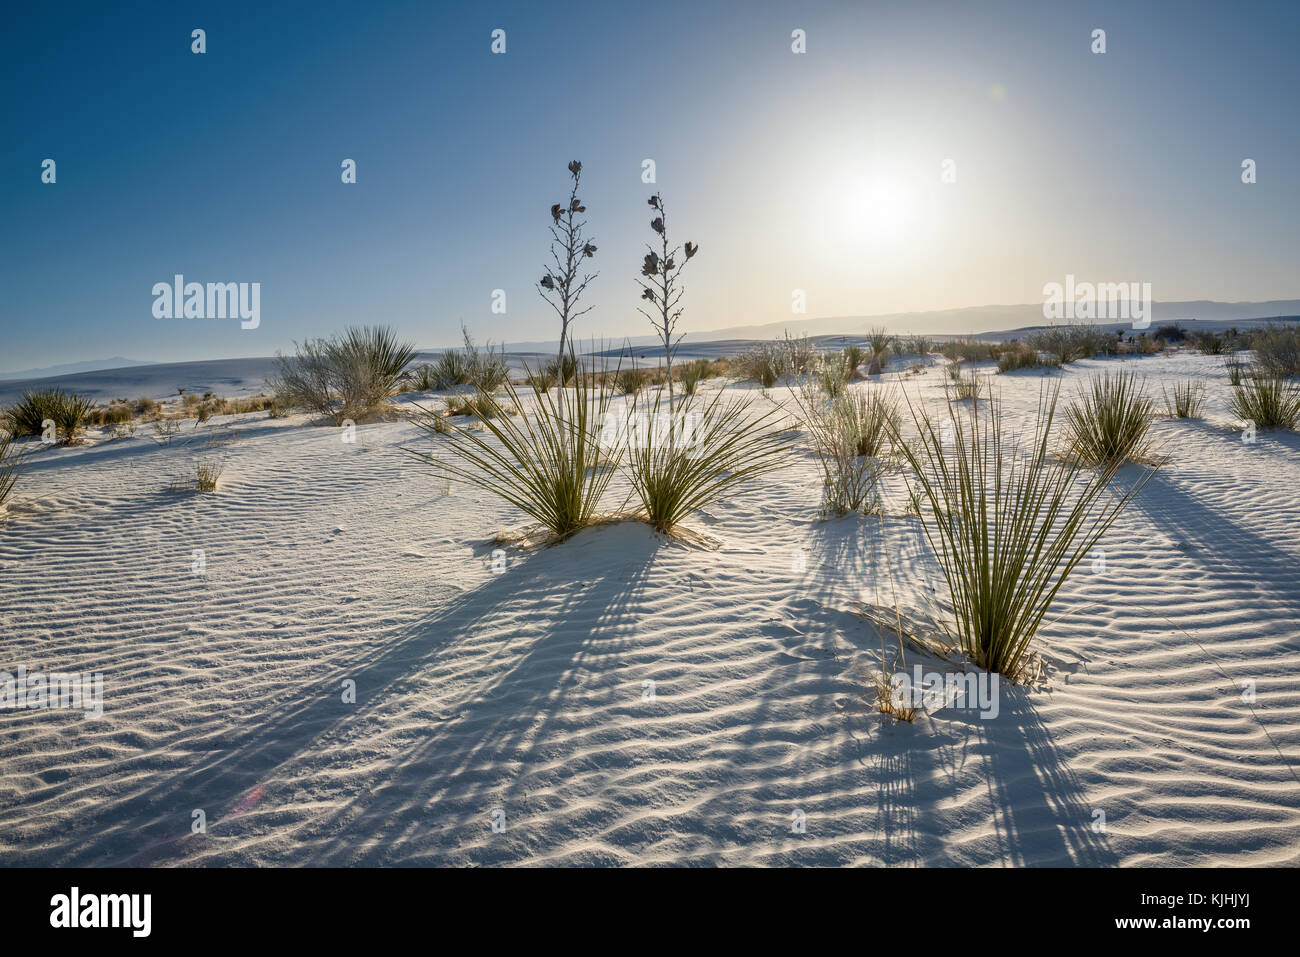 Le uniche e bellissime spiagge di sabbia bianca monumento nazionale nel Nuovo Messico.Questo gesso campo di dune è il più grande del suo genere in tutto il mondo. Situato in Southe Foto Stock